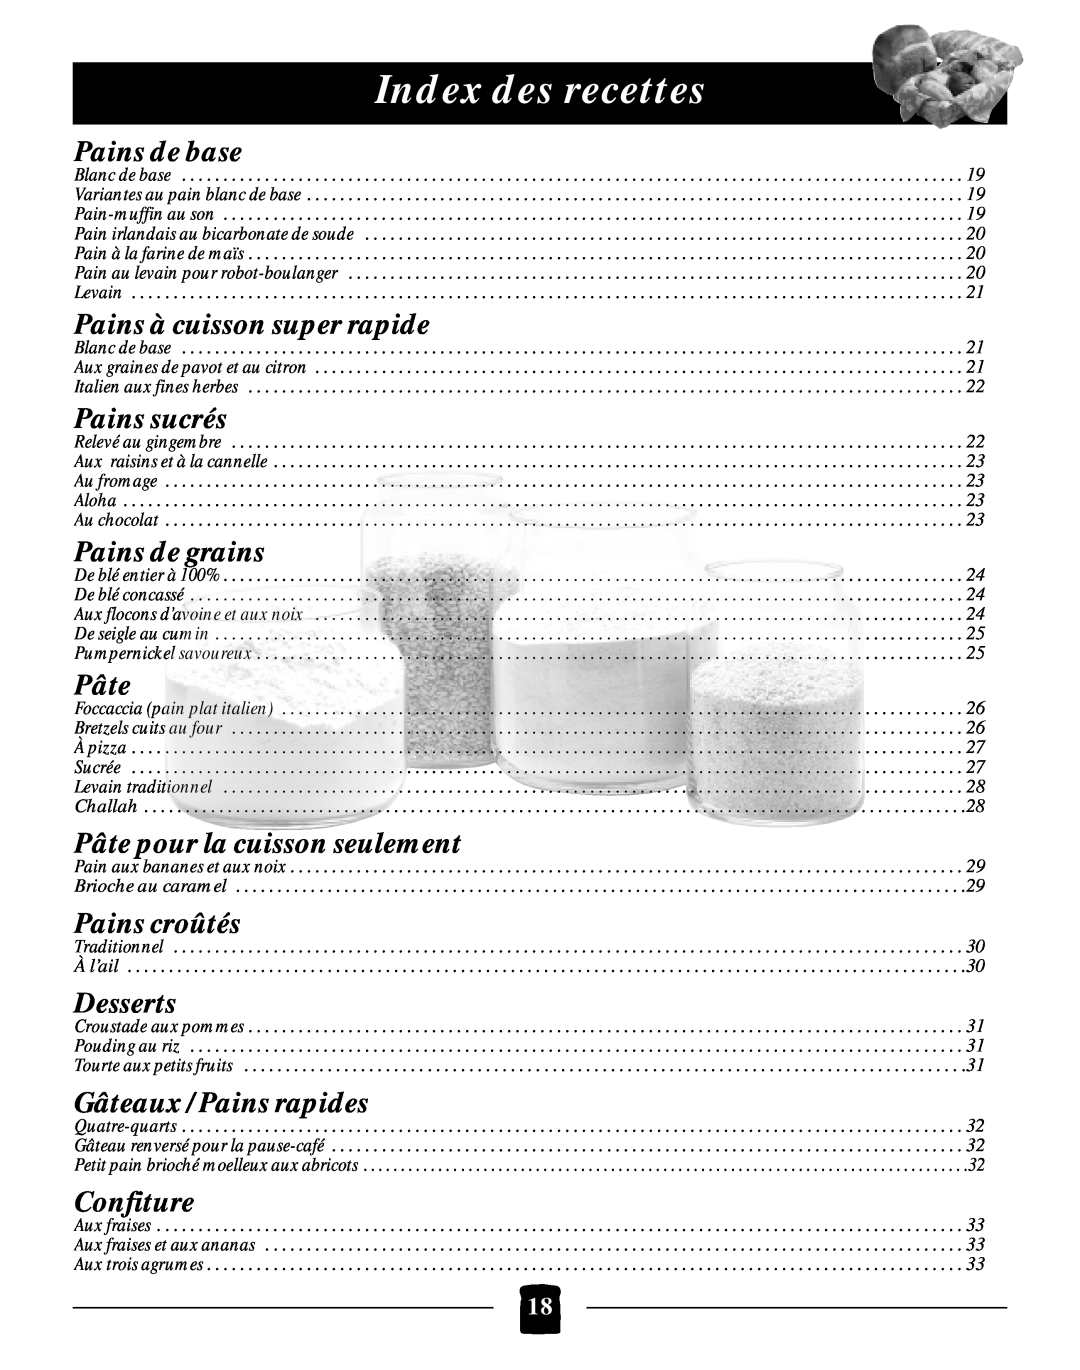 Black & Decker B2005 manual Index des recettes 